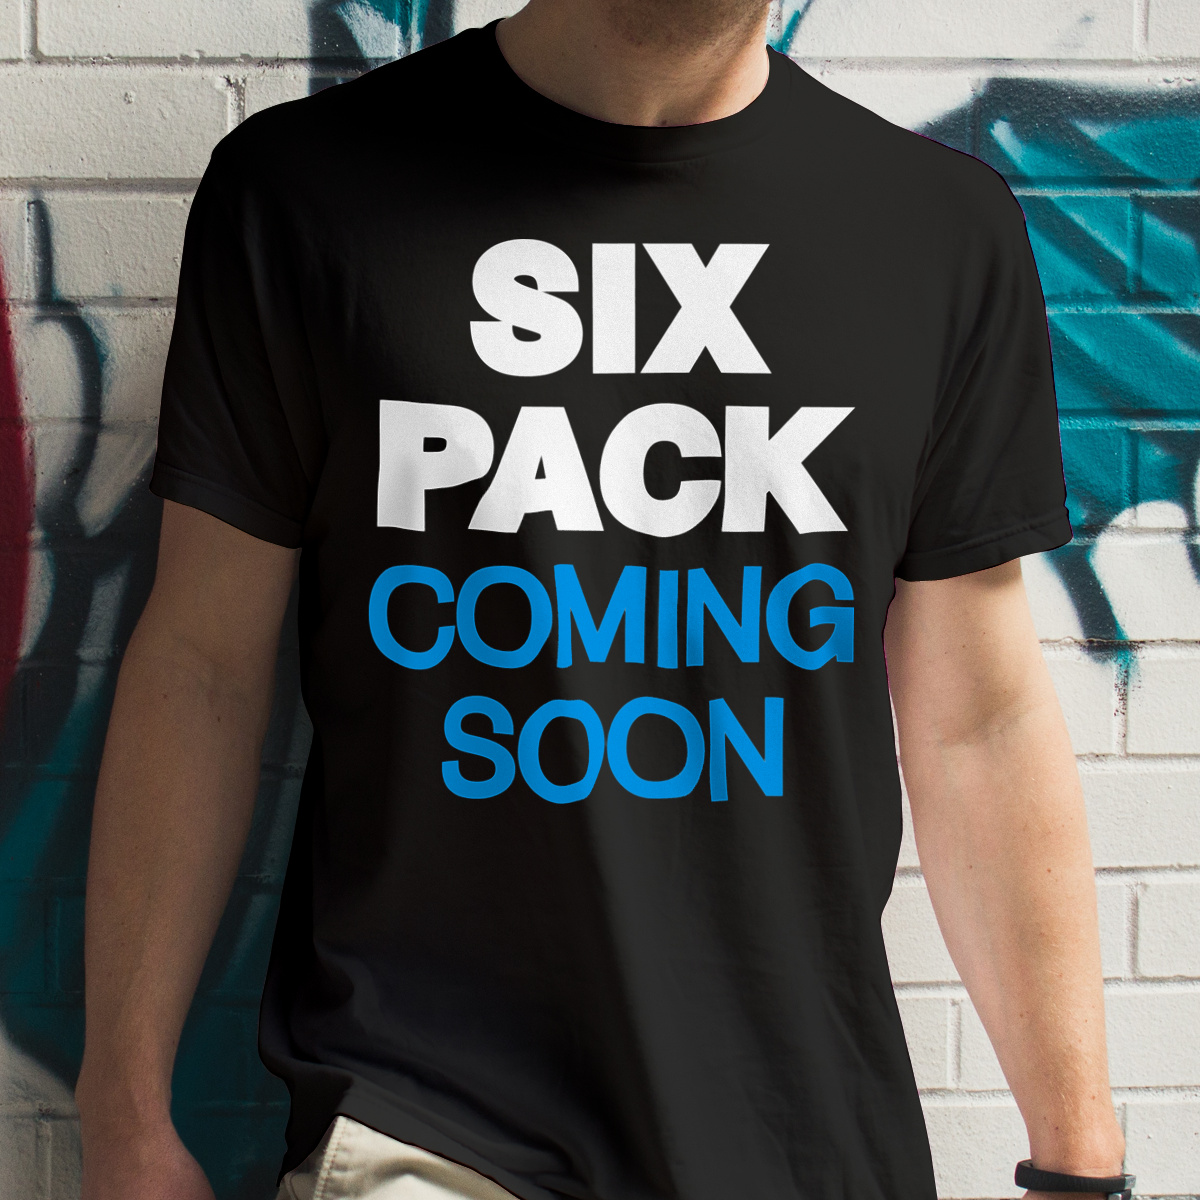 Six Pack Coming Soon - Męska Koszulka Czarna